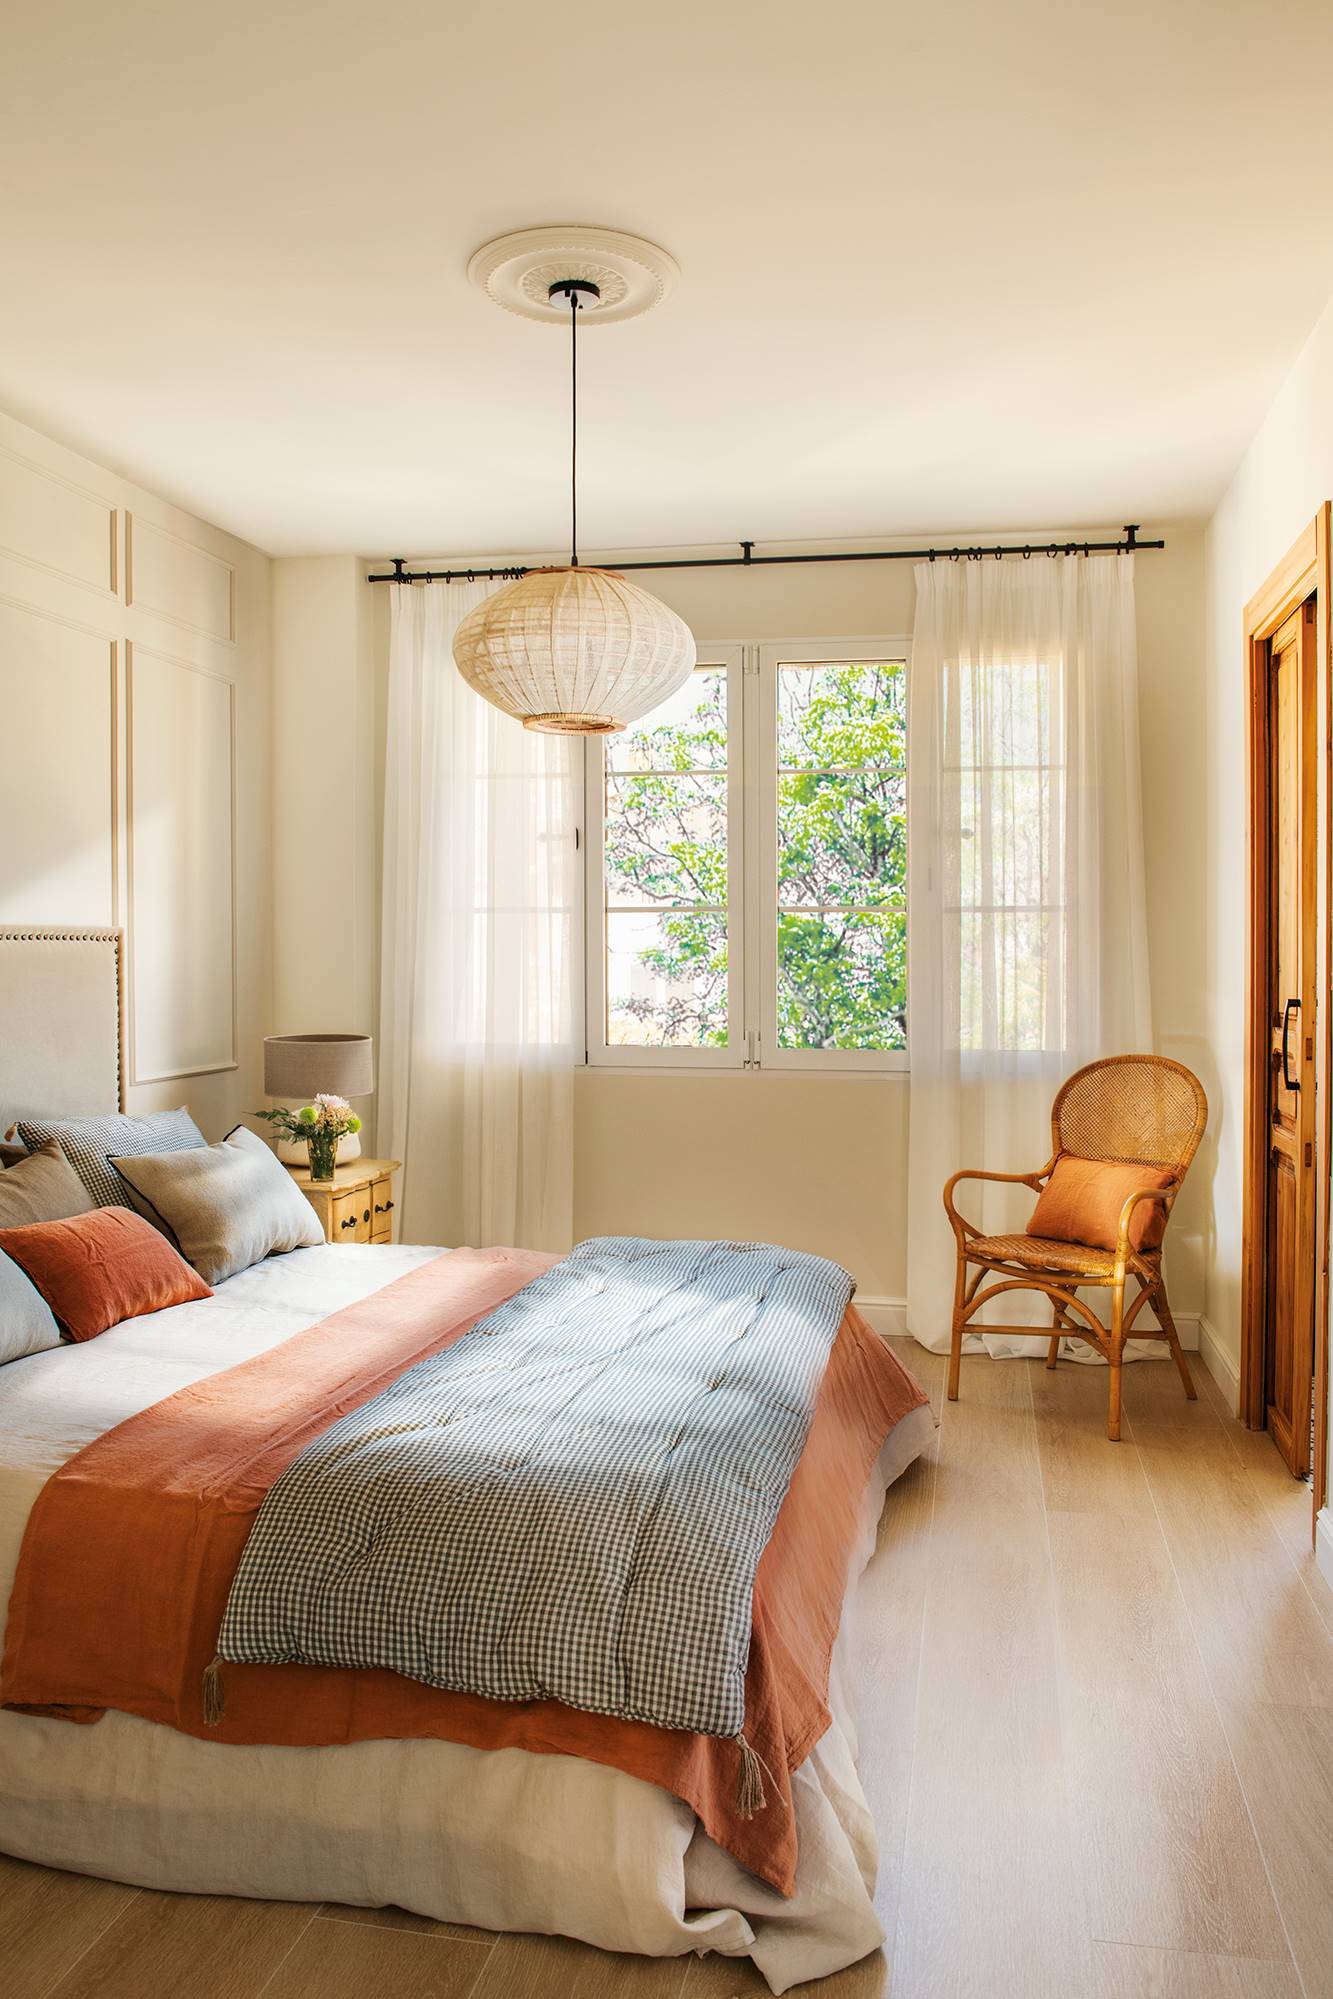 Dormitorio decorado con lámpara de techo y butaca y cama rematada con plaid acolchado.